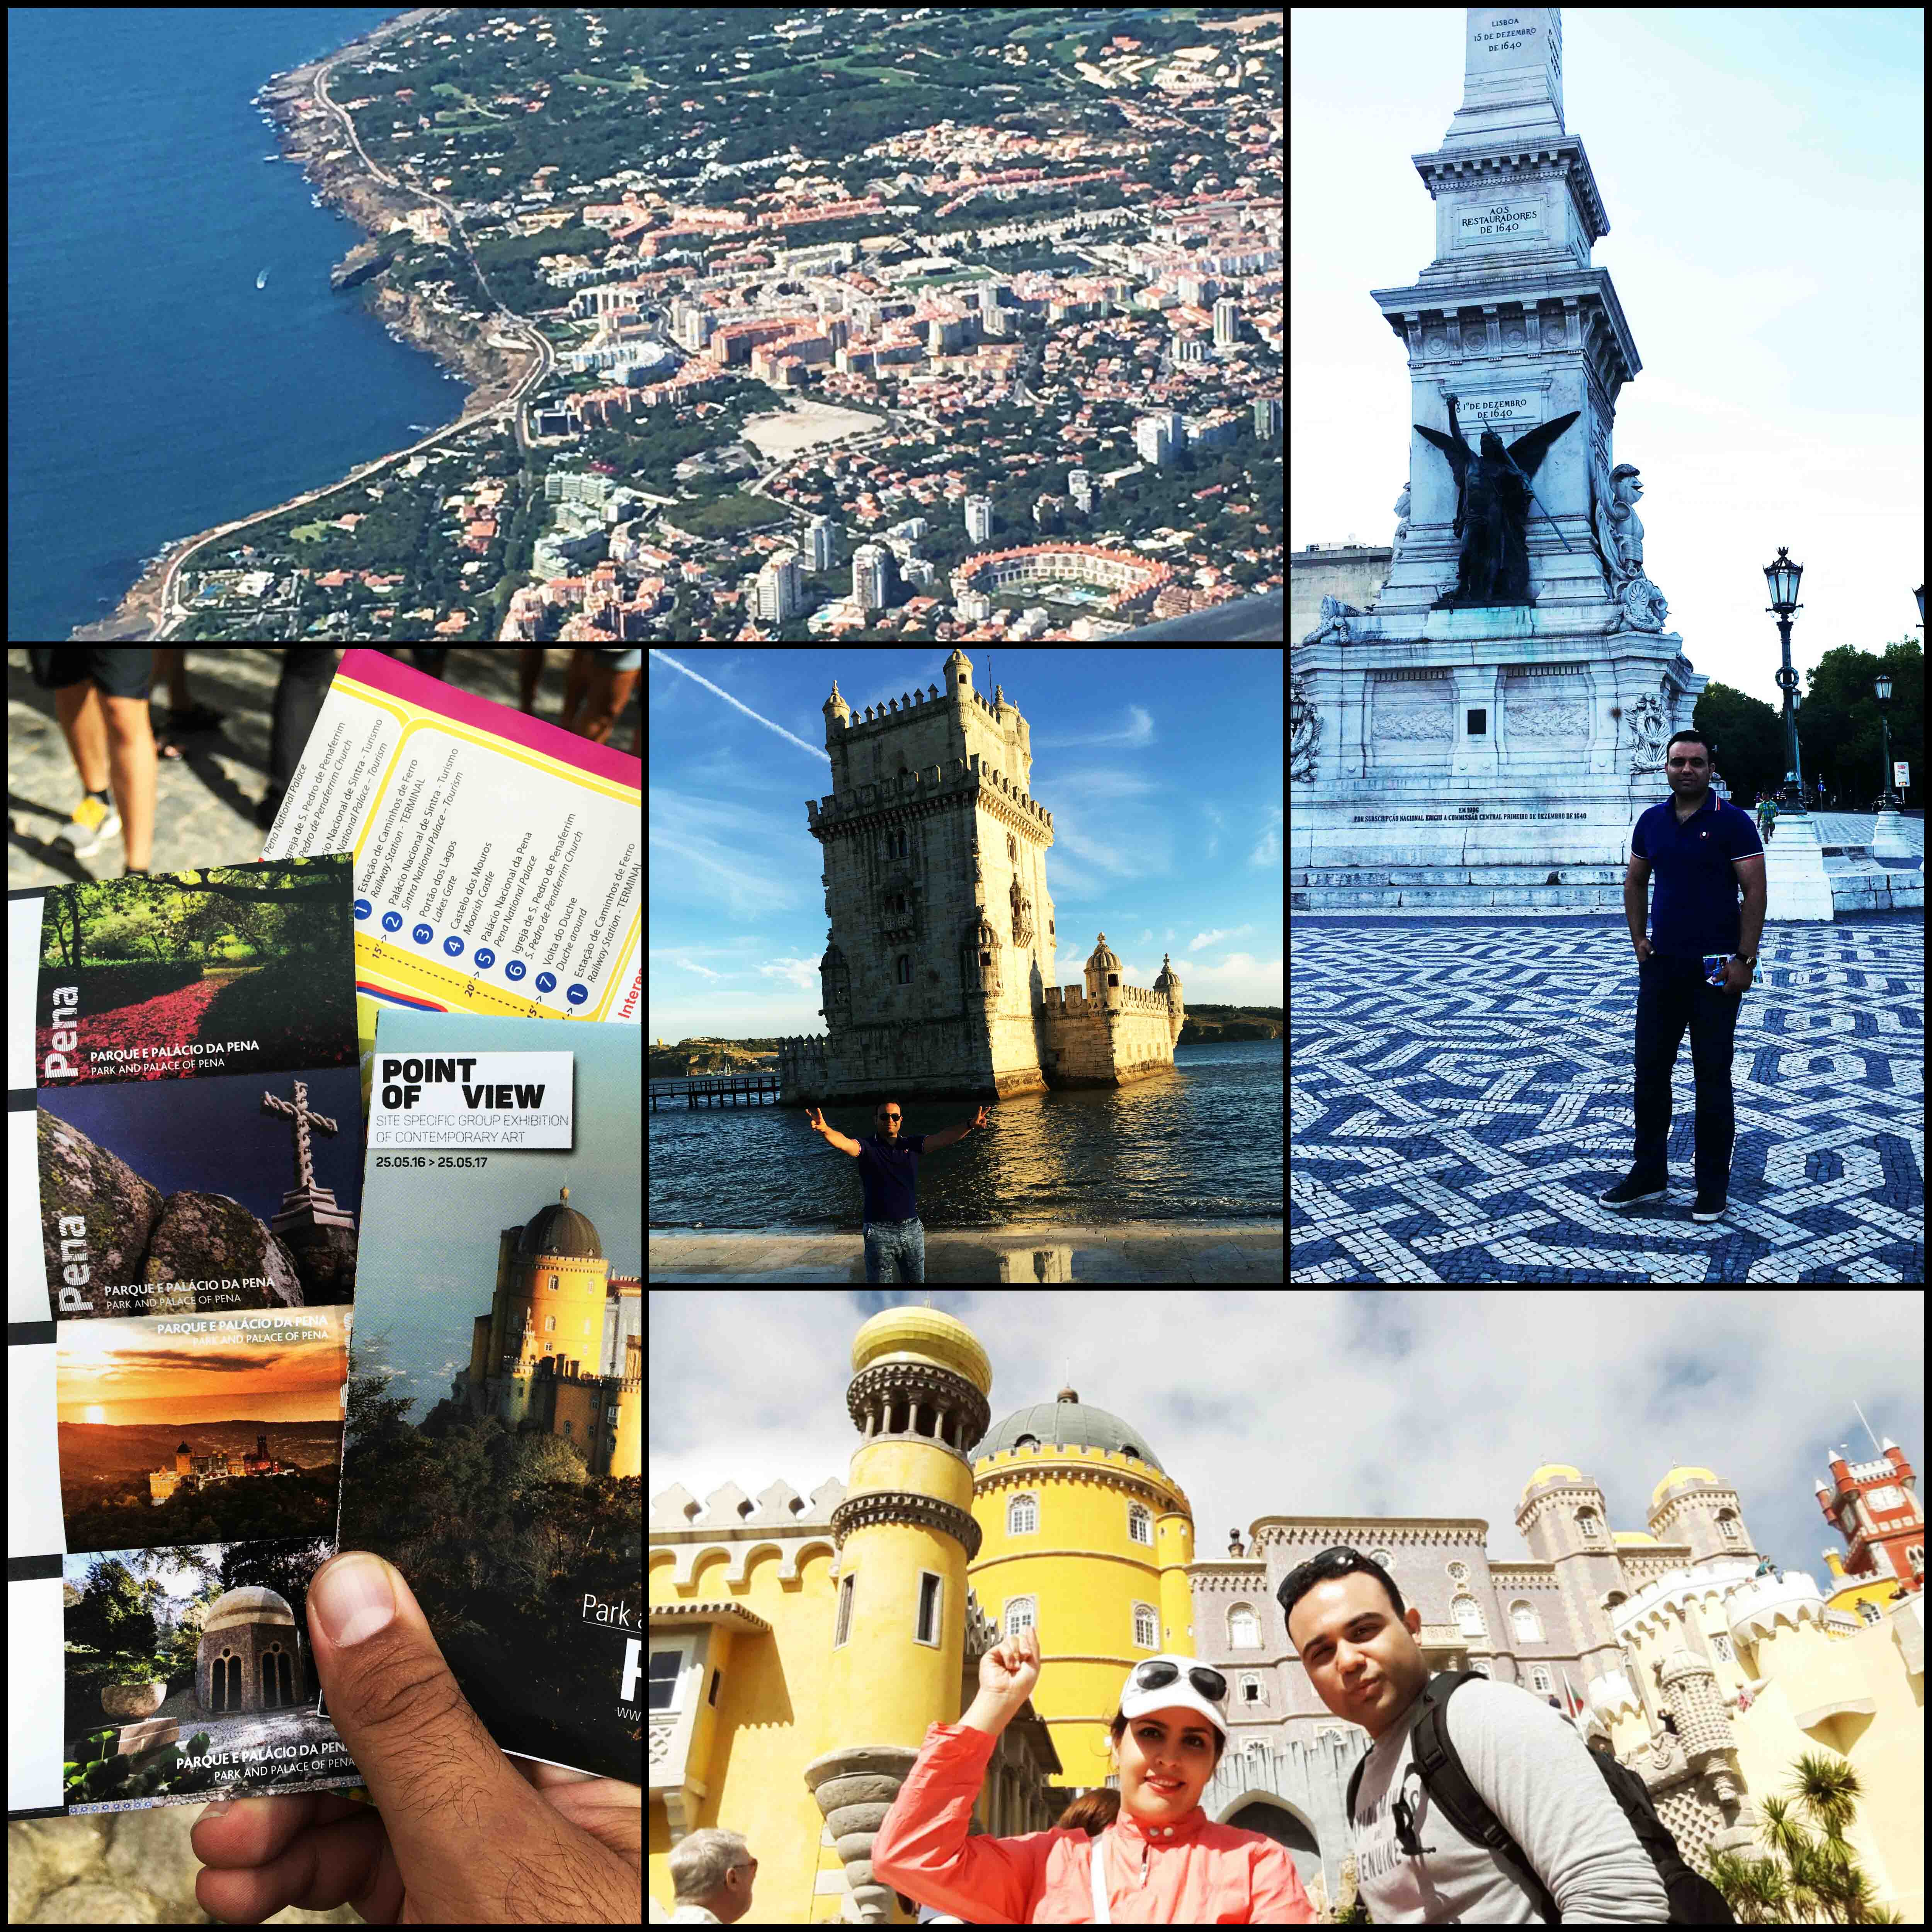 سفرنامه تور اروپا 11 روزه: پرتغال (لیسبون)، ایتالیا (میلان/ونیز/کومو)، سوئیس (لوگانو)، اتریش (وین) - بخش اول " پرتغال - لیسبون "